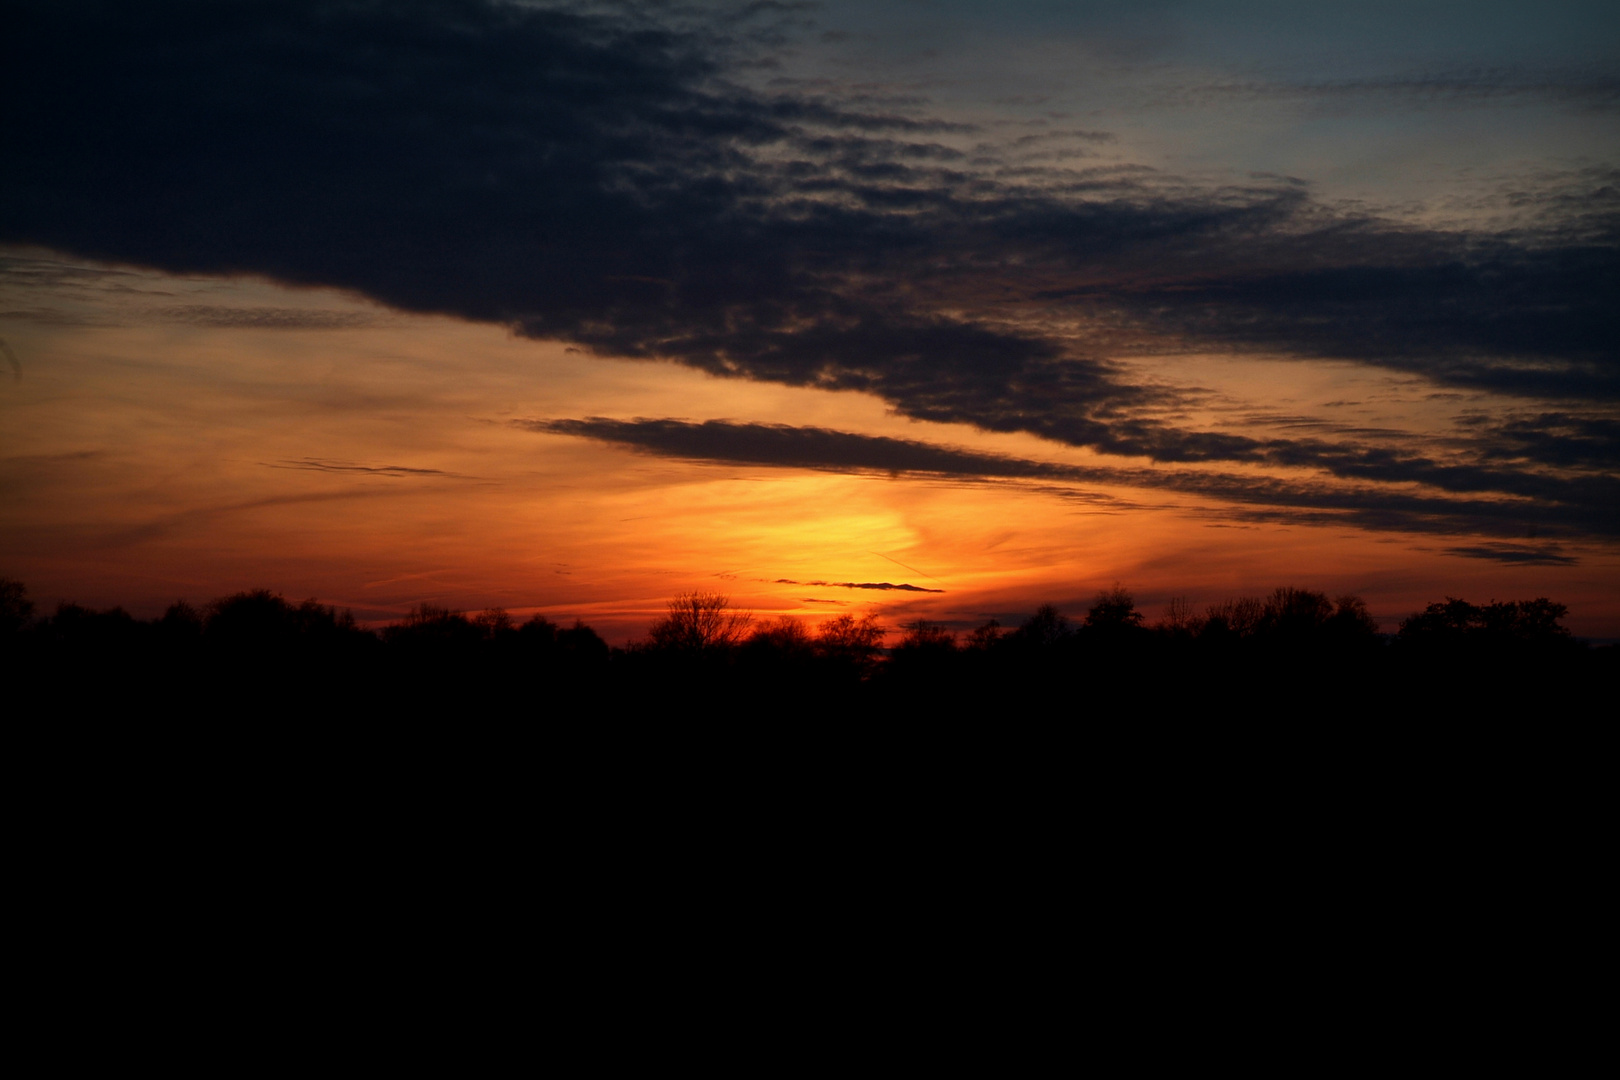 Sonnenuntergang; 06.März 2013; 18:30 Uhr; Bad Zwischenahn